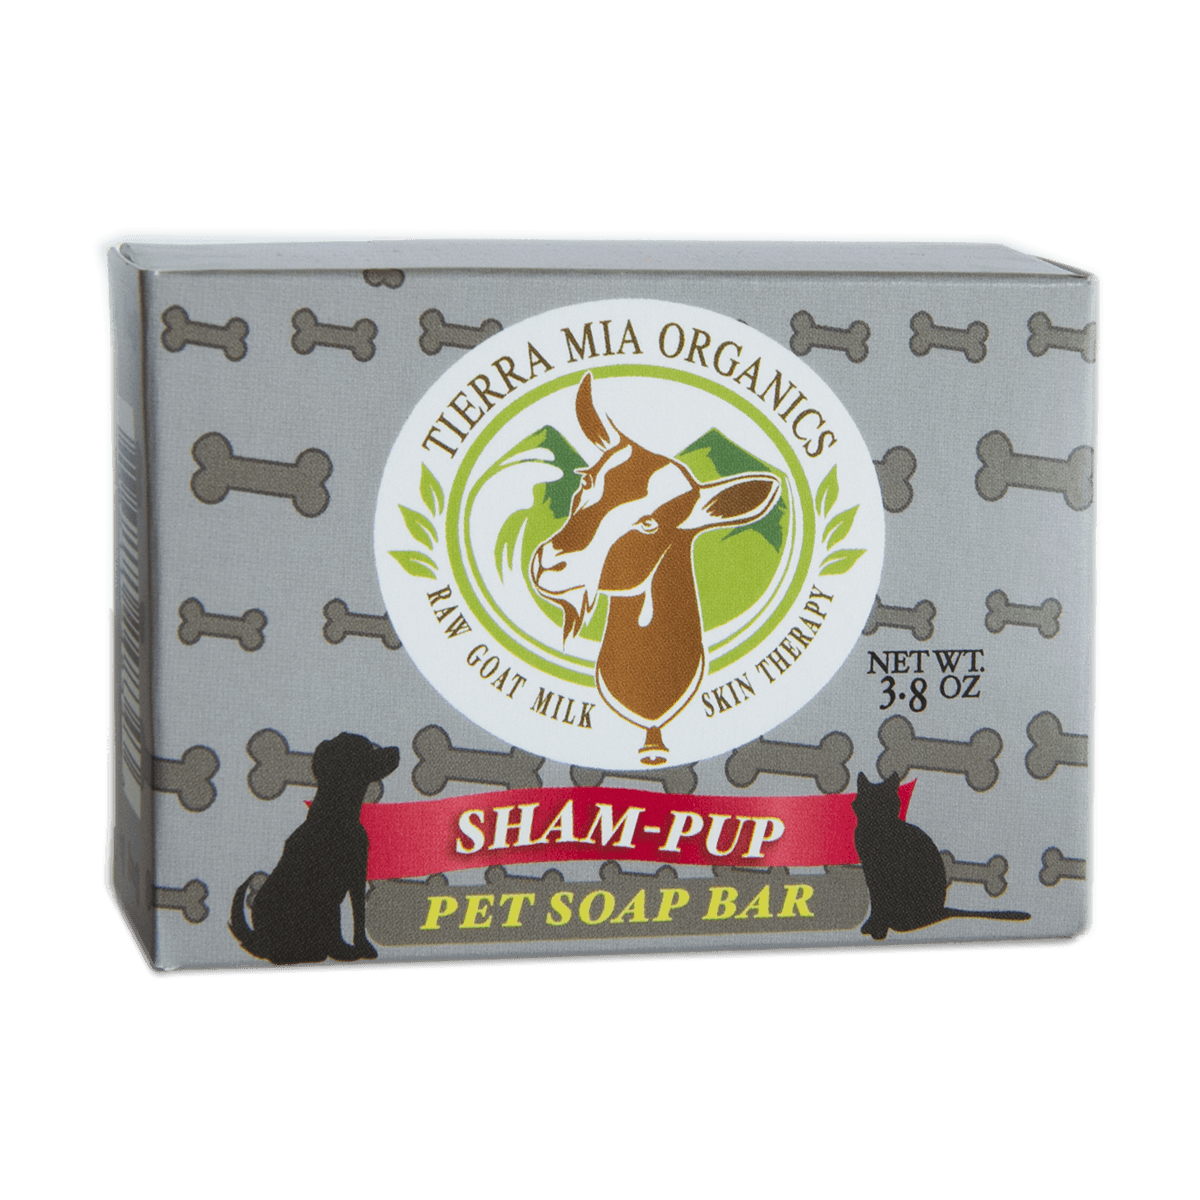 Doggy Shampoo Goat's Milk Soap